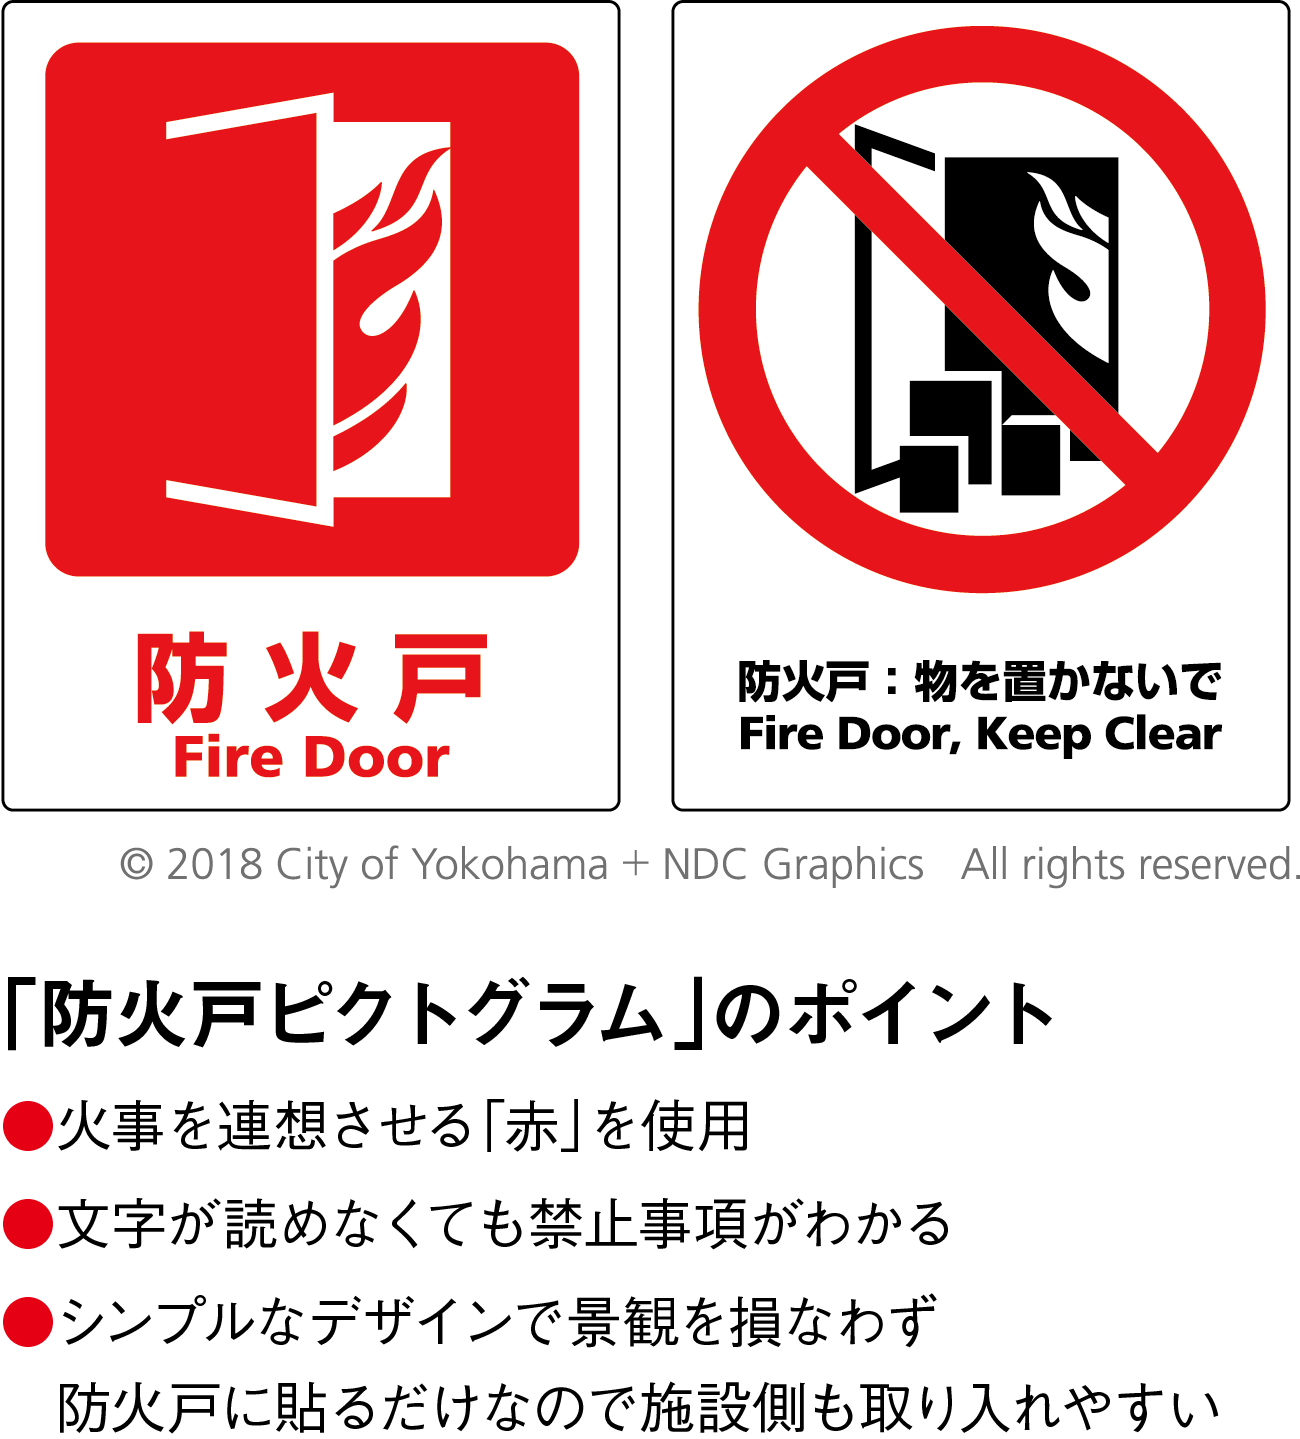 防災意識の向上も促す 防火戸ピクトグラム 横浜で生まれて 今後は全国へ ジチタイワークス